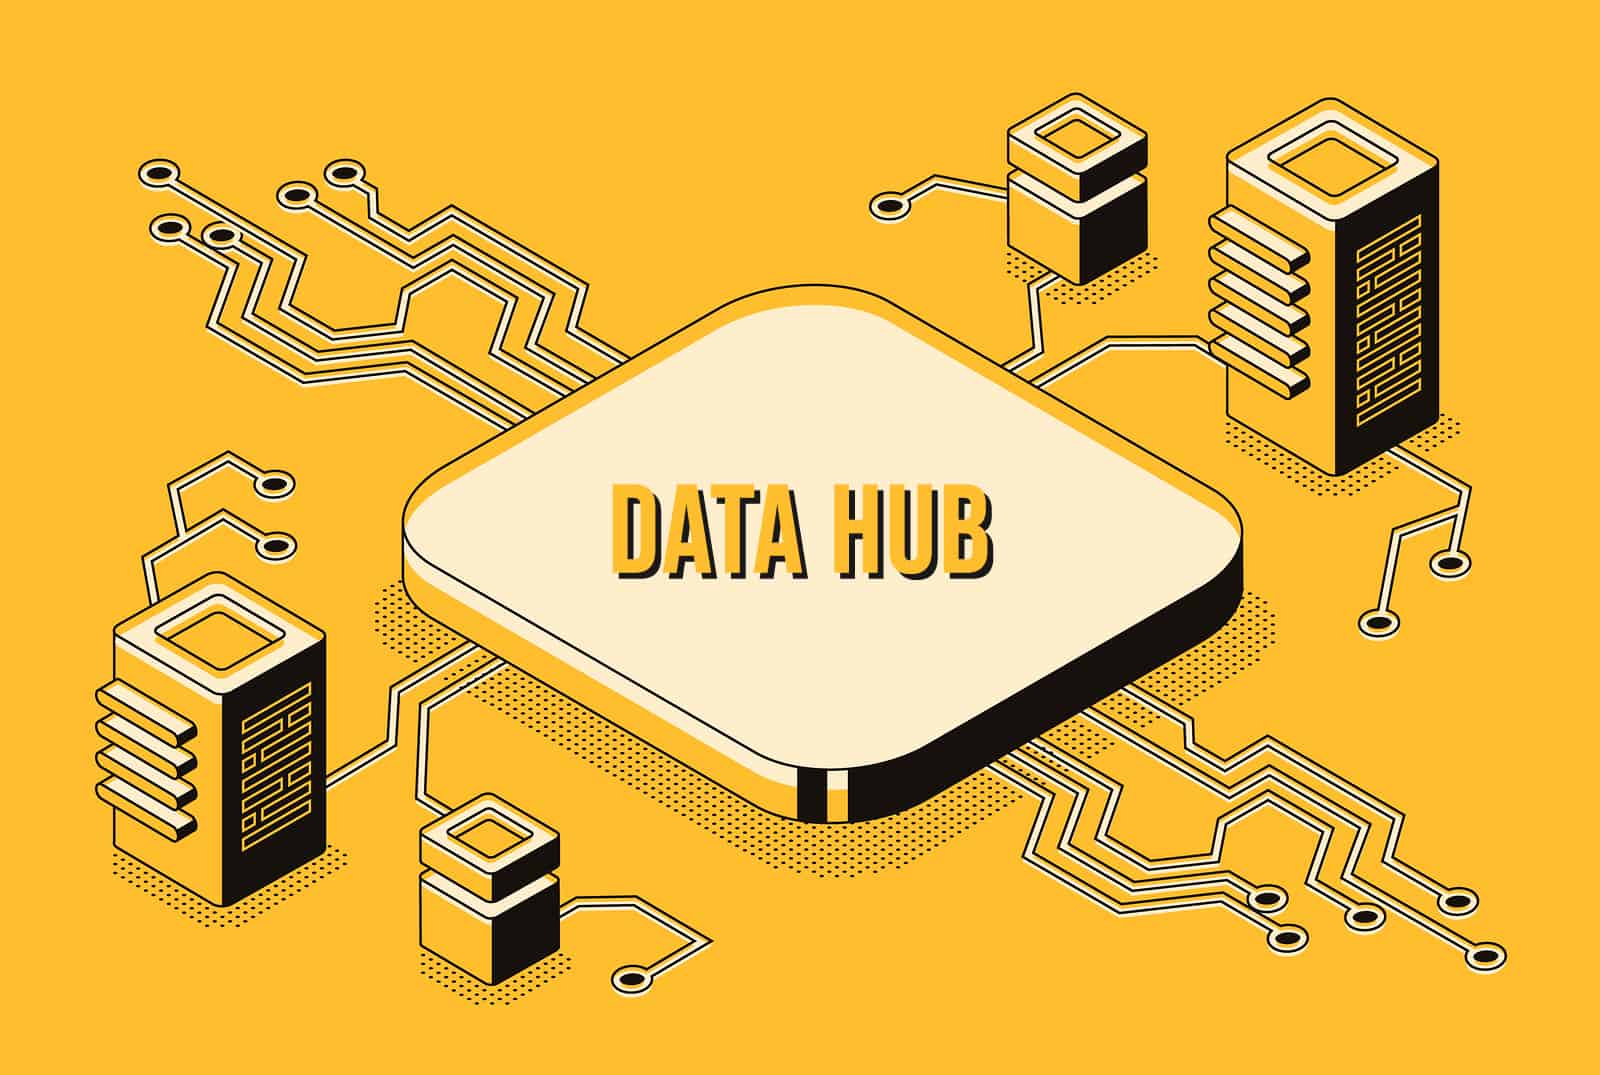 Data hub with biometrics data